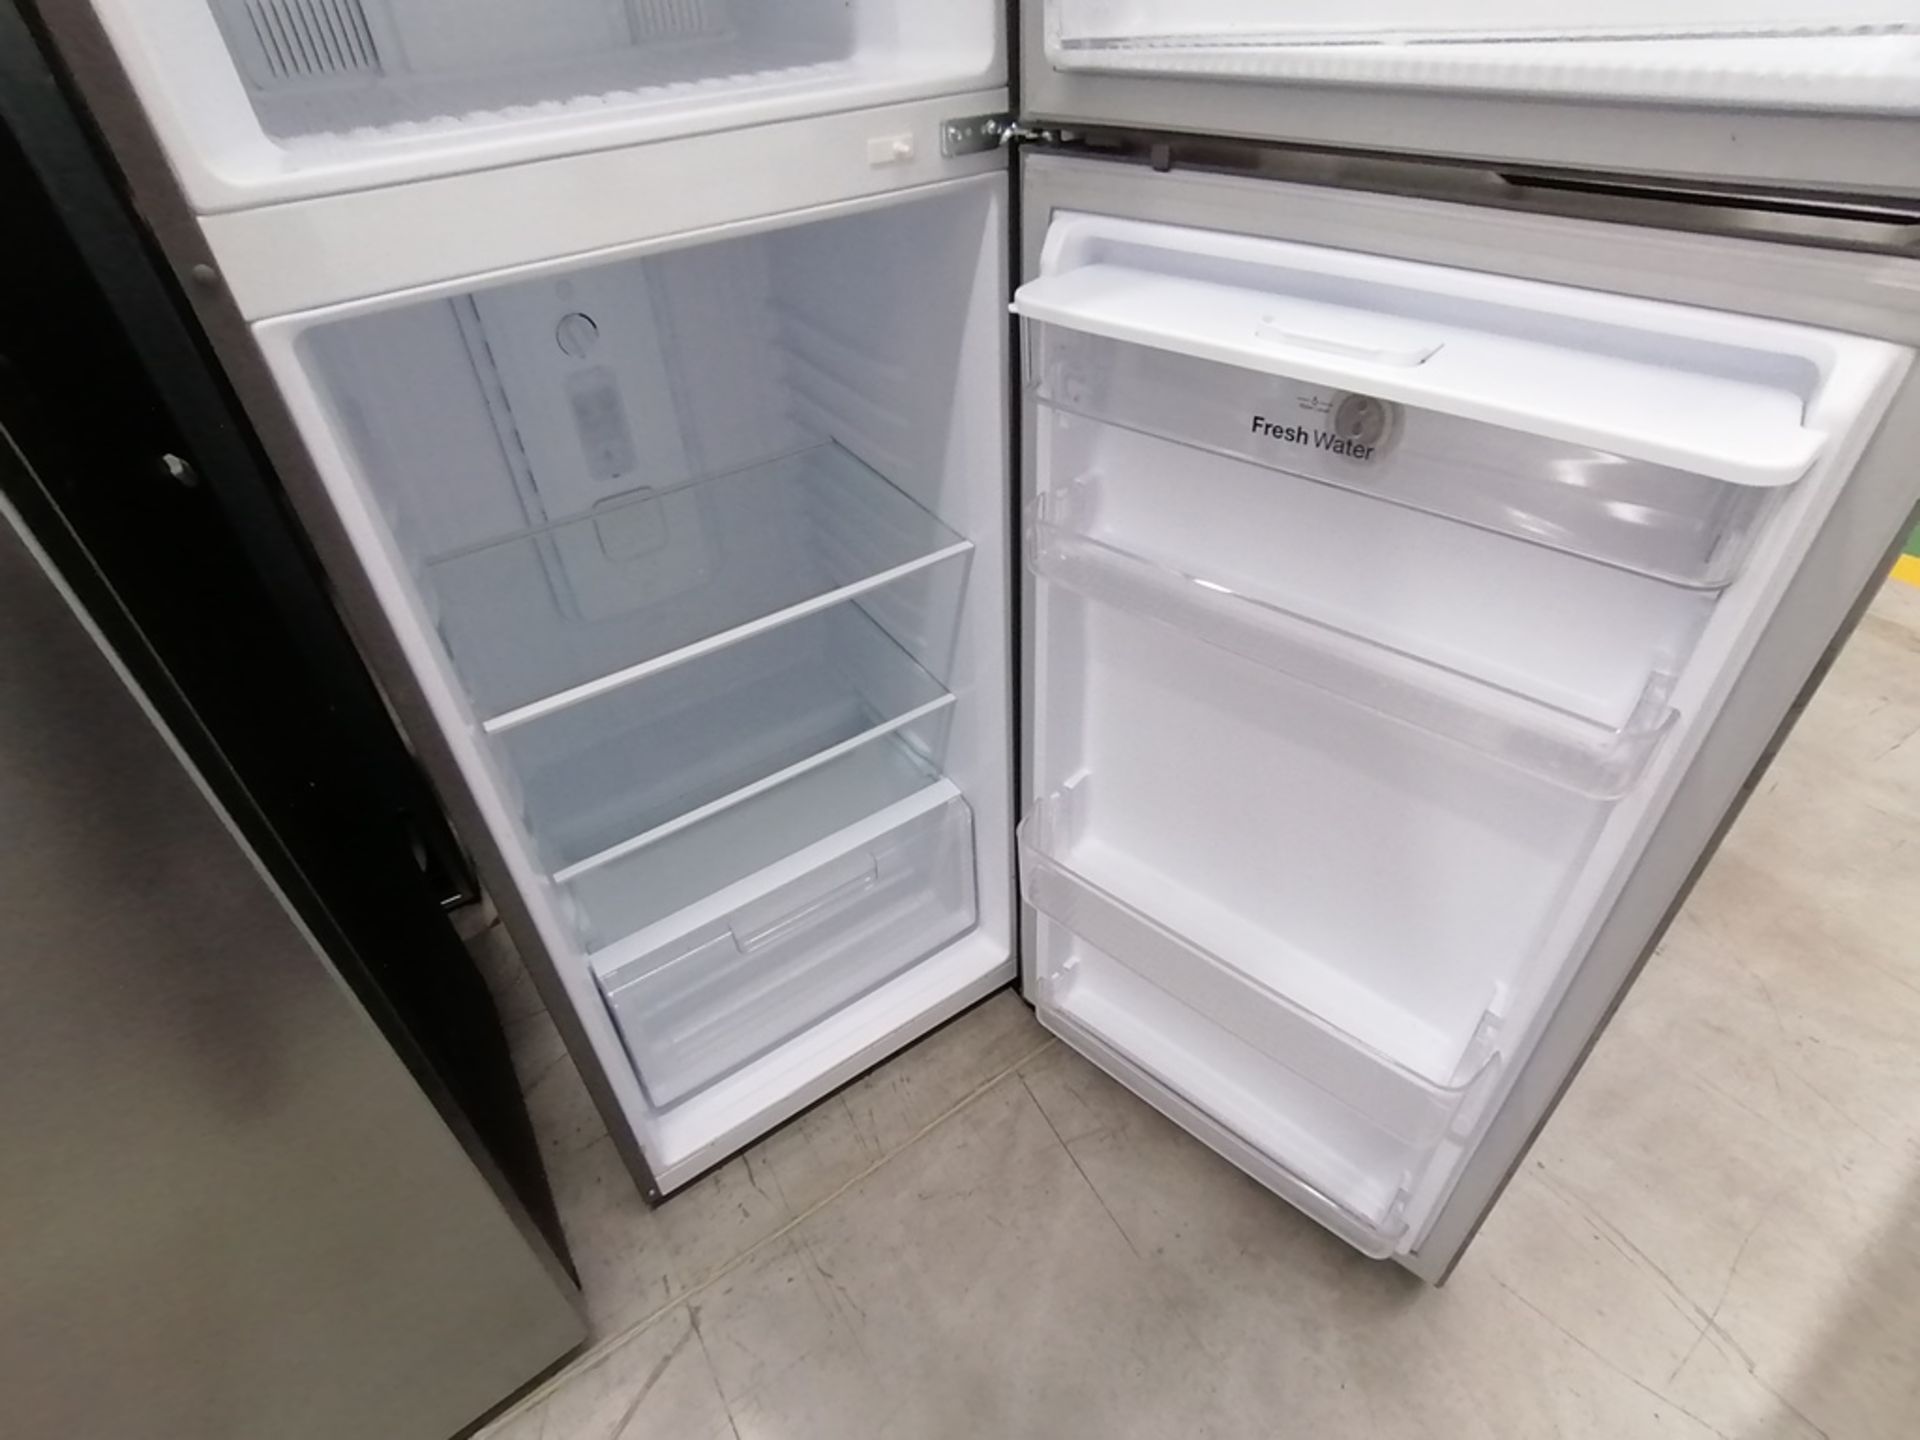 Lote de 2 refrigeradores incluye: 1 Refrigerador con dispensador de agua, Marca Winia, Modelo DFR40 - Image 12 of 15